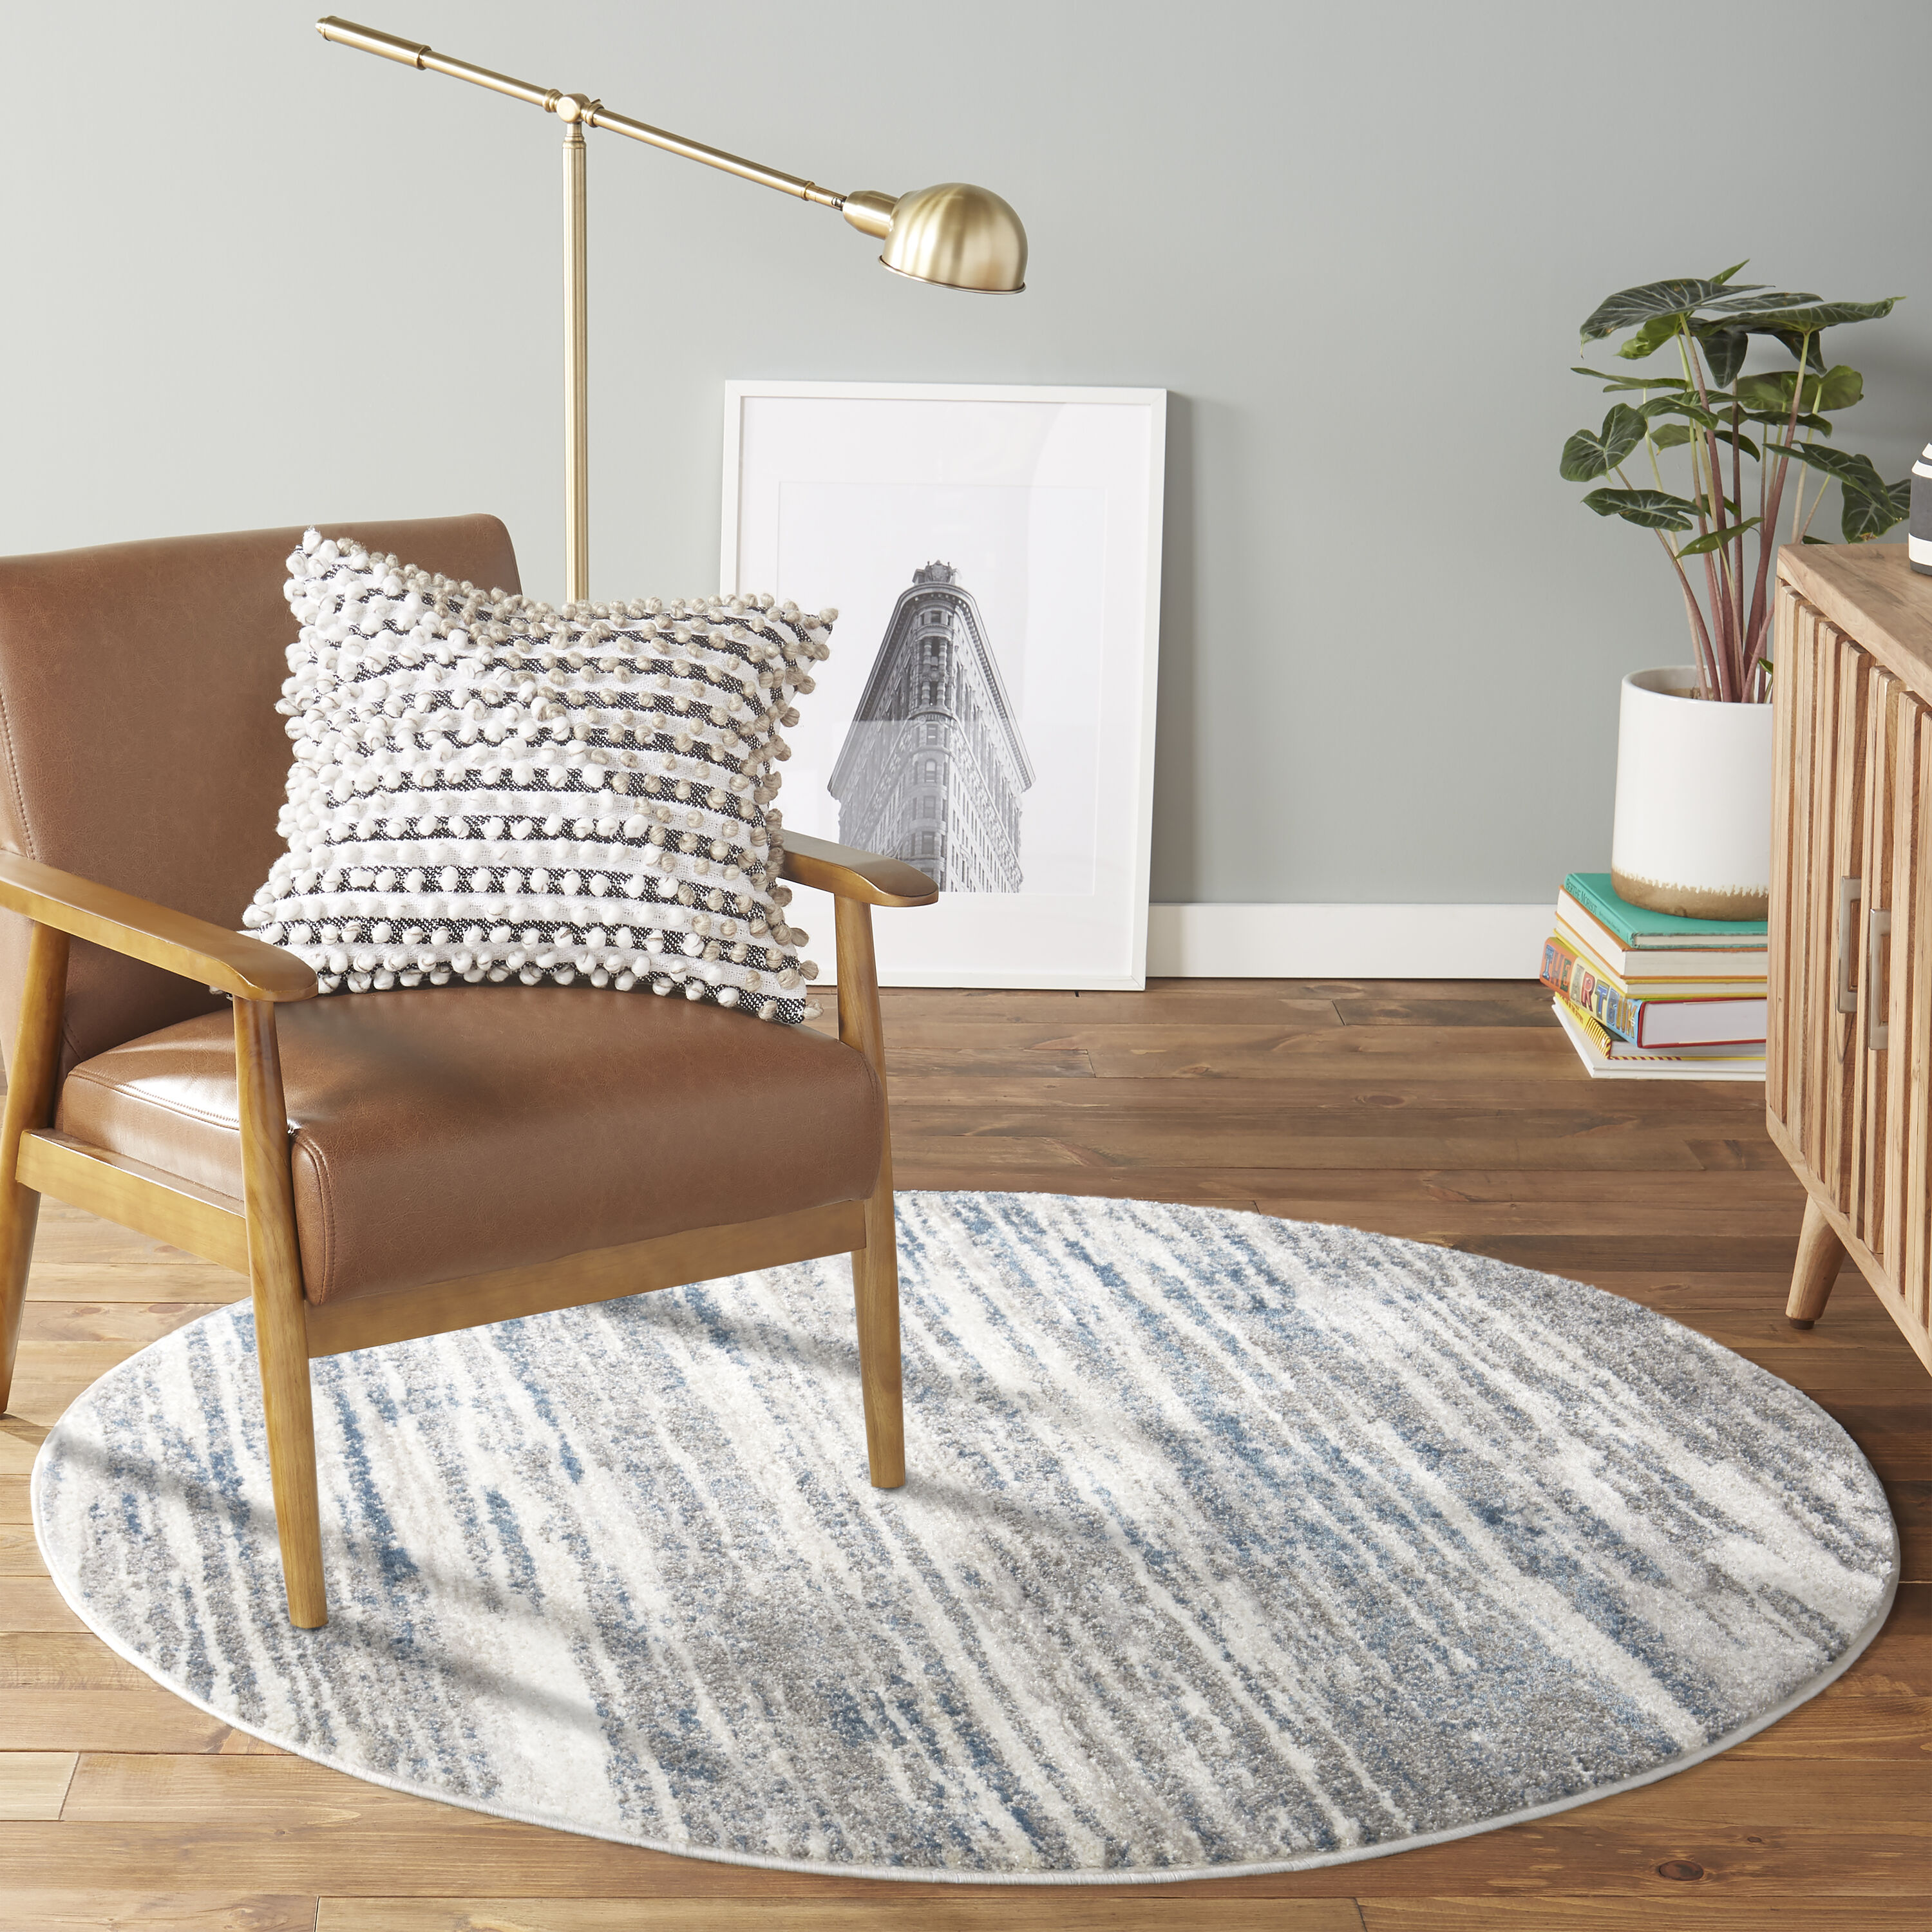 Thảm tròn phòng trong màu xám xanh dương không chỉ đem lại sự trang trọng mà còn giúp tôn lên vẻ đẹp của căn phòng. Chiếc thảm này sẽ tạo nên một điểm nhấn độc đáo giữa các món nội thất khác trong căn phòng của bạn. Cùng tìm hiểu về sản phẩm này để trang trí cho ngôi nhà của bạn trở nên đẹp hơn.